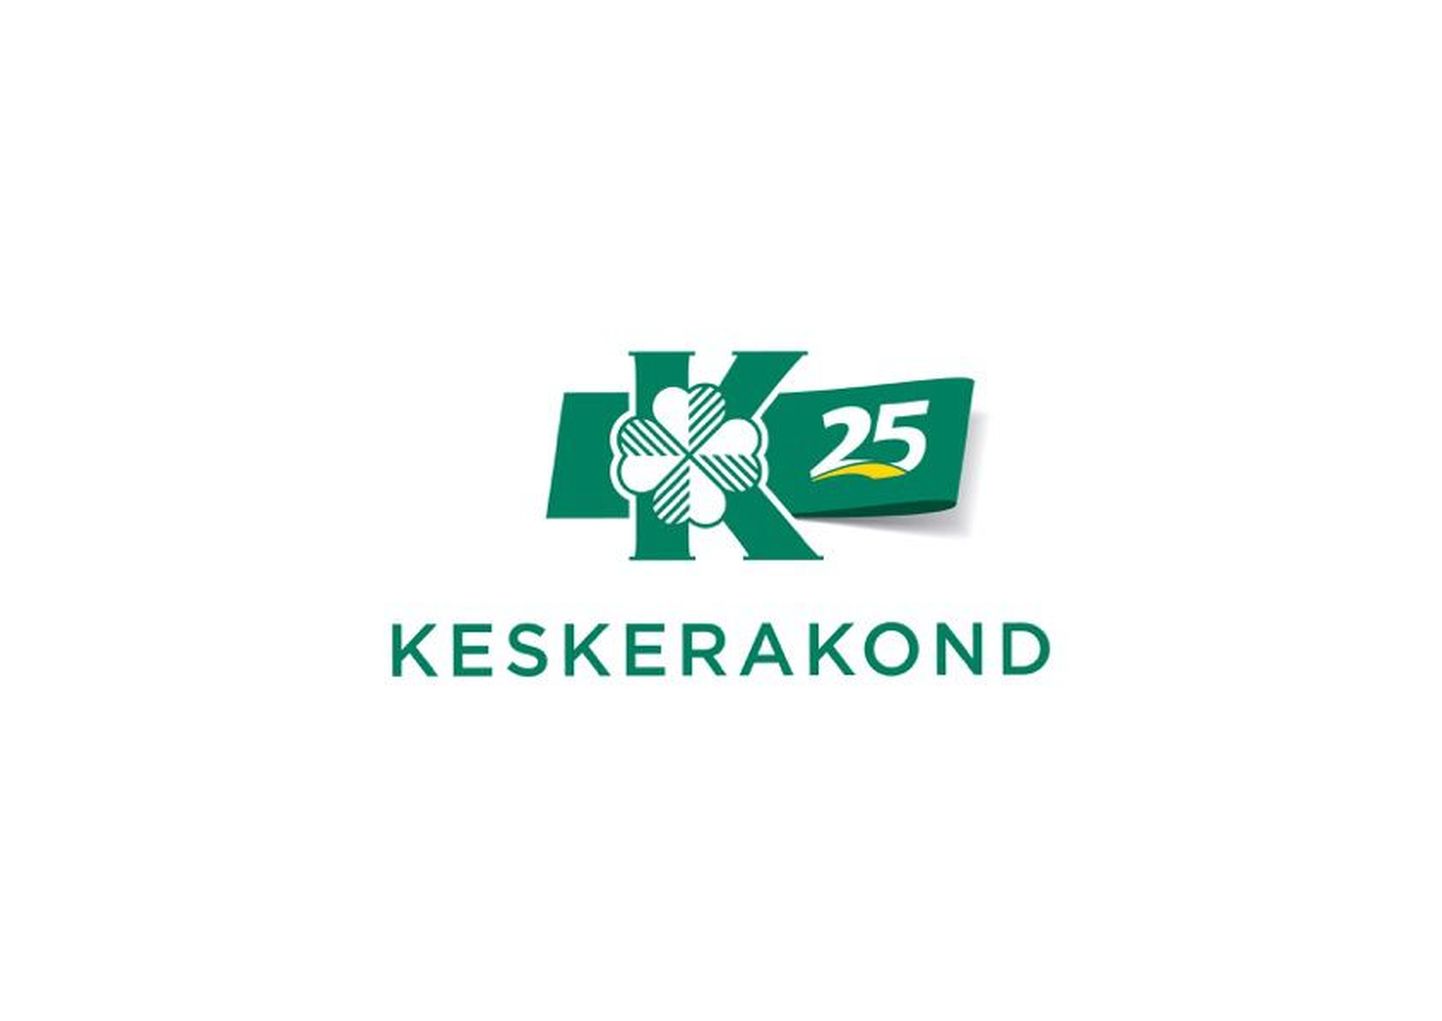 В тематическом логотипе используется традиционный логотип партии центристов, к  которому на зеленом фоне в современном оформлении добавлены цифры «25».